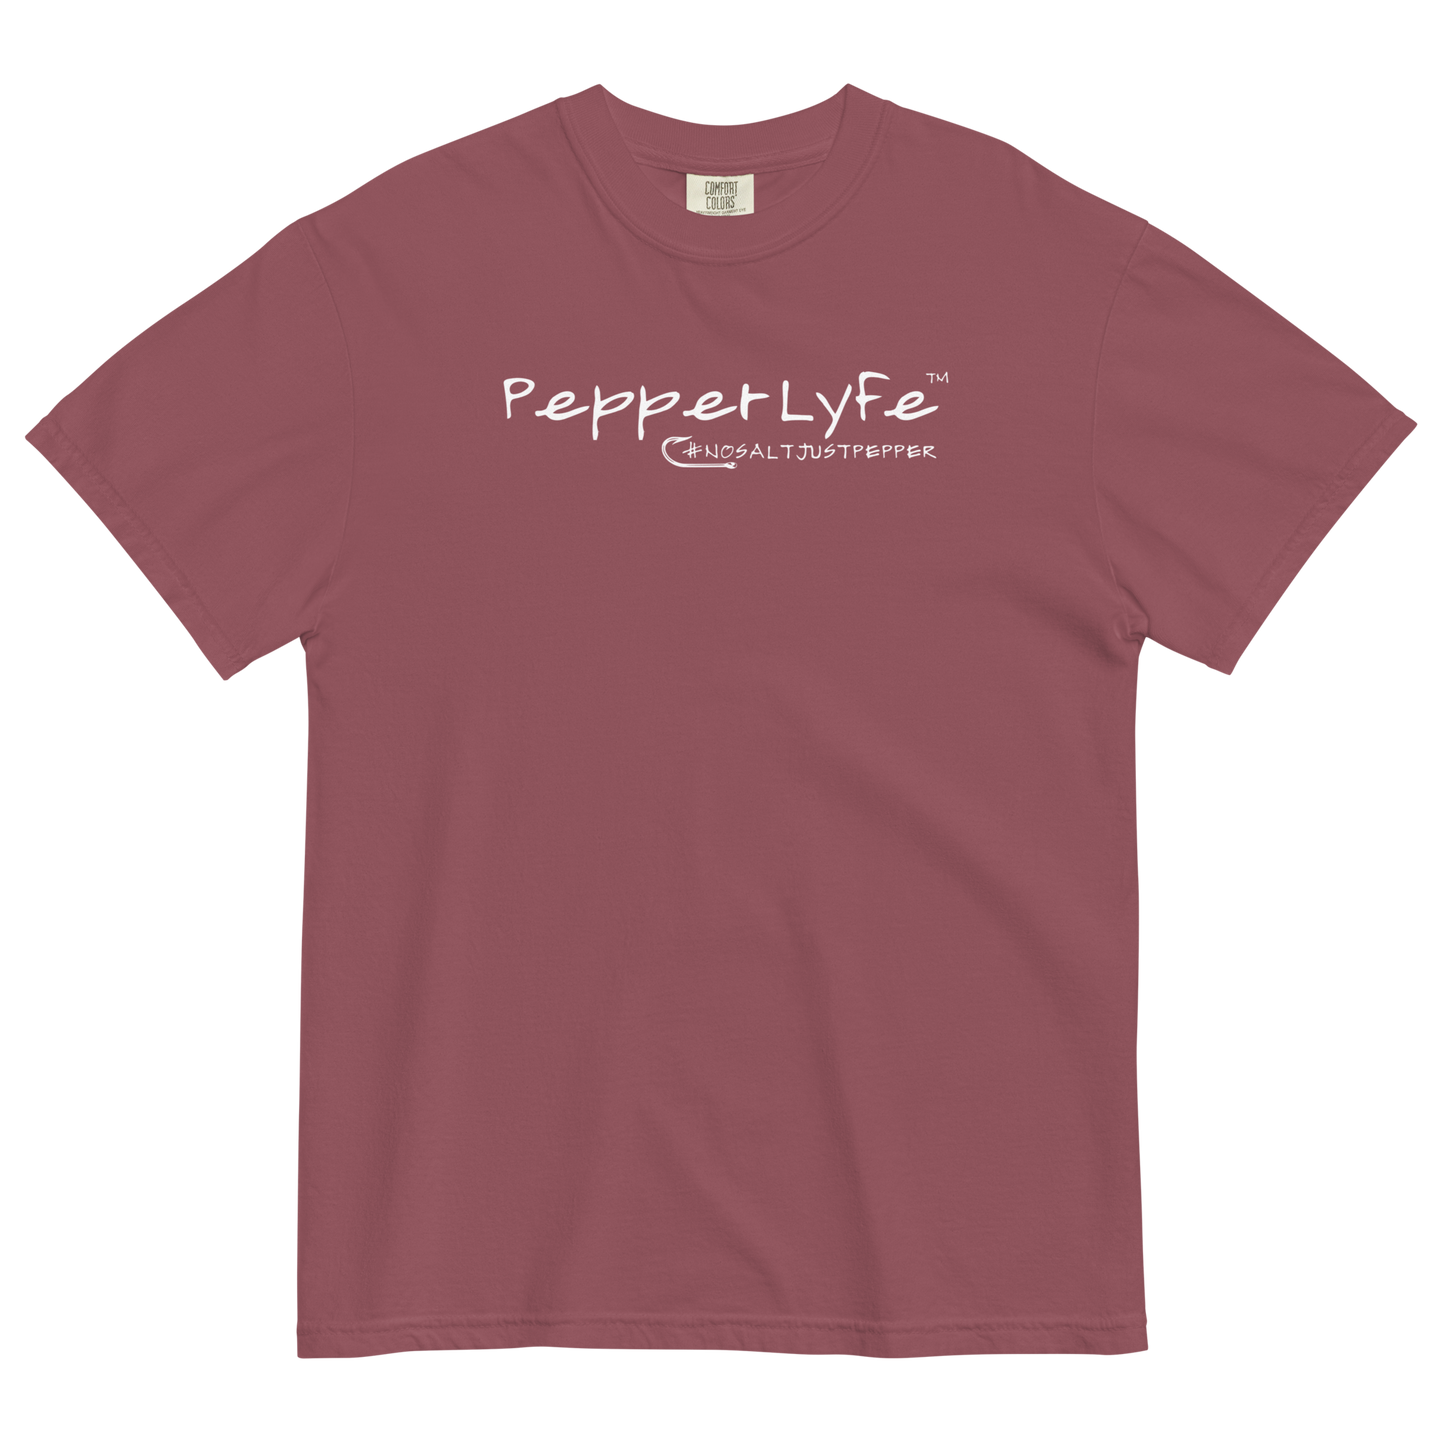 PepperLyfe #nosaltjustpepper T-Shirt - Comfort Colors